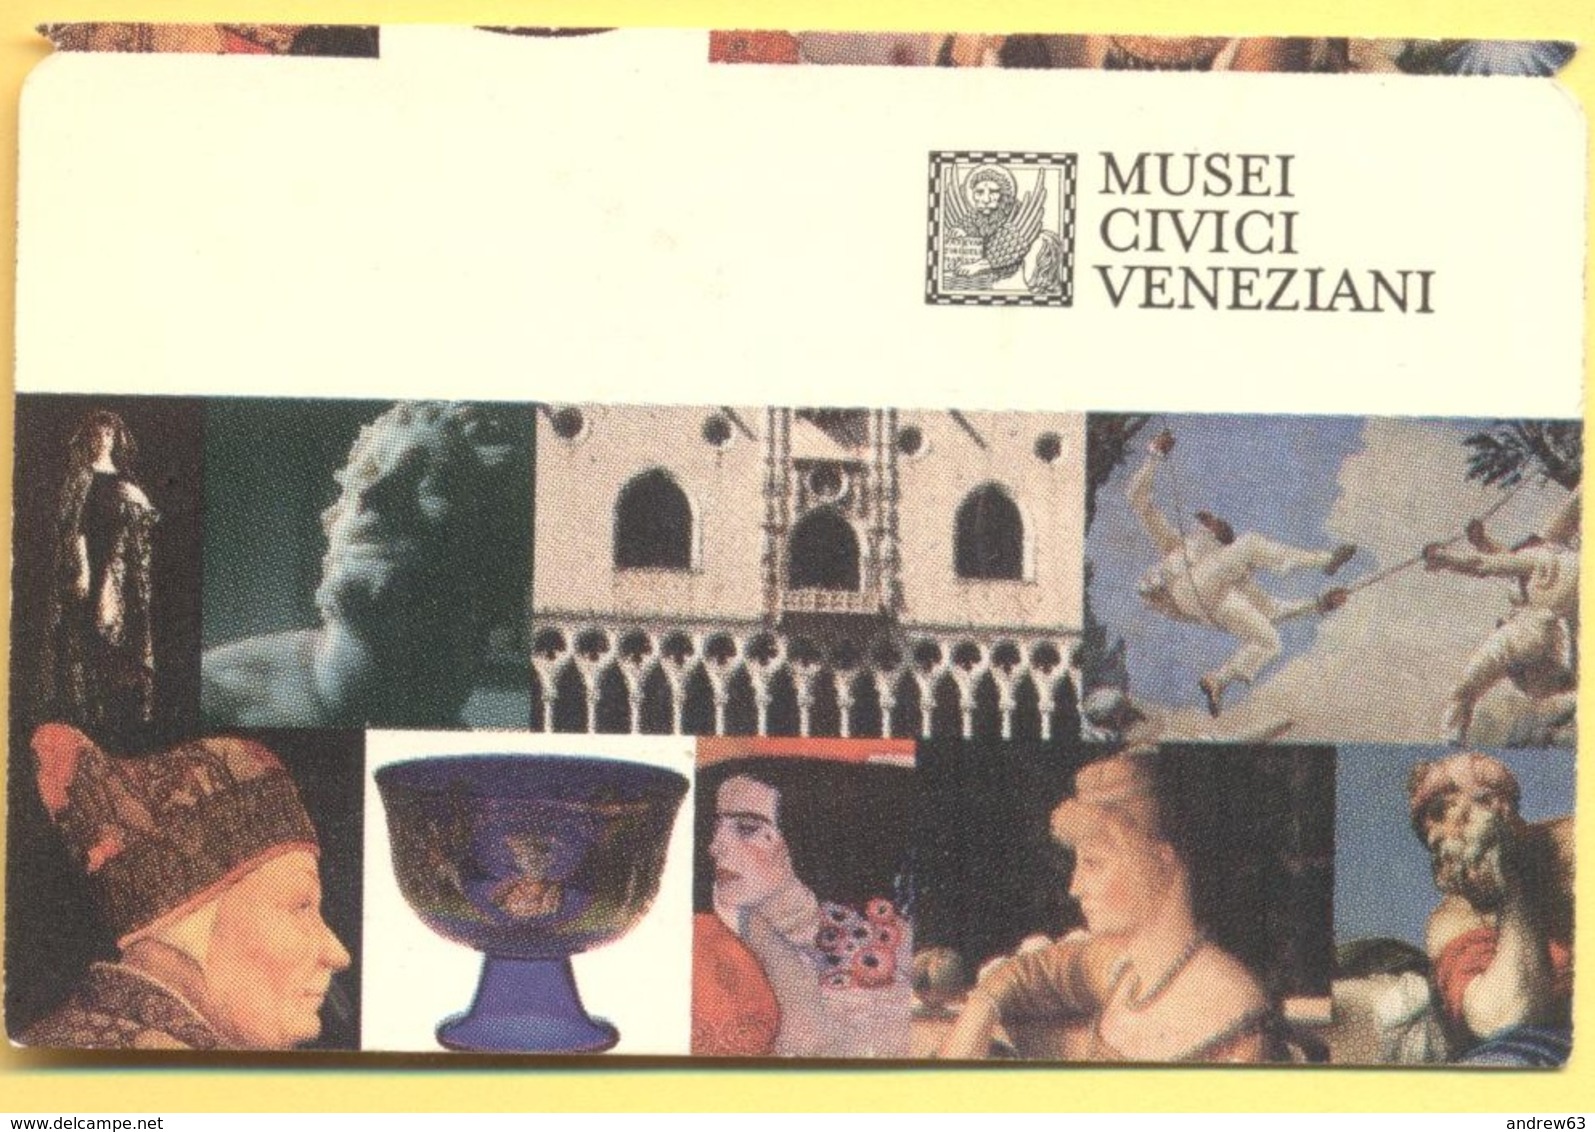 ITALIA - ITALY - ITALIE - VENEZIA - Musei Civici Veneziani - I Musei Di Piazza San Marco - MUSEUM CARD - Biglietto Ingre - Tickets - Vouchers